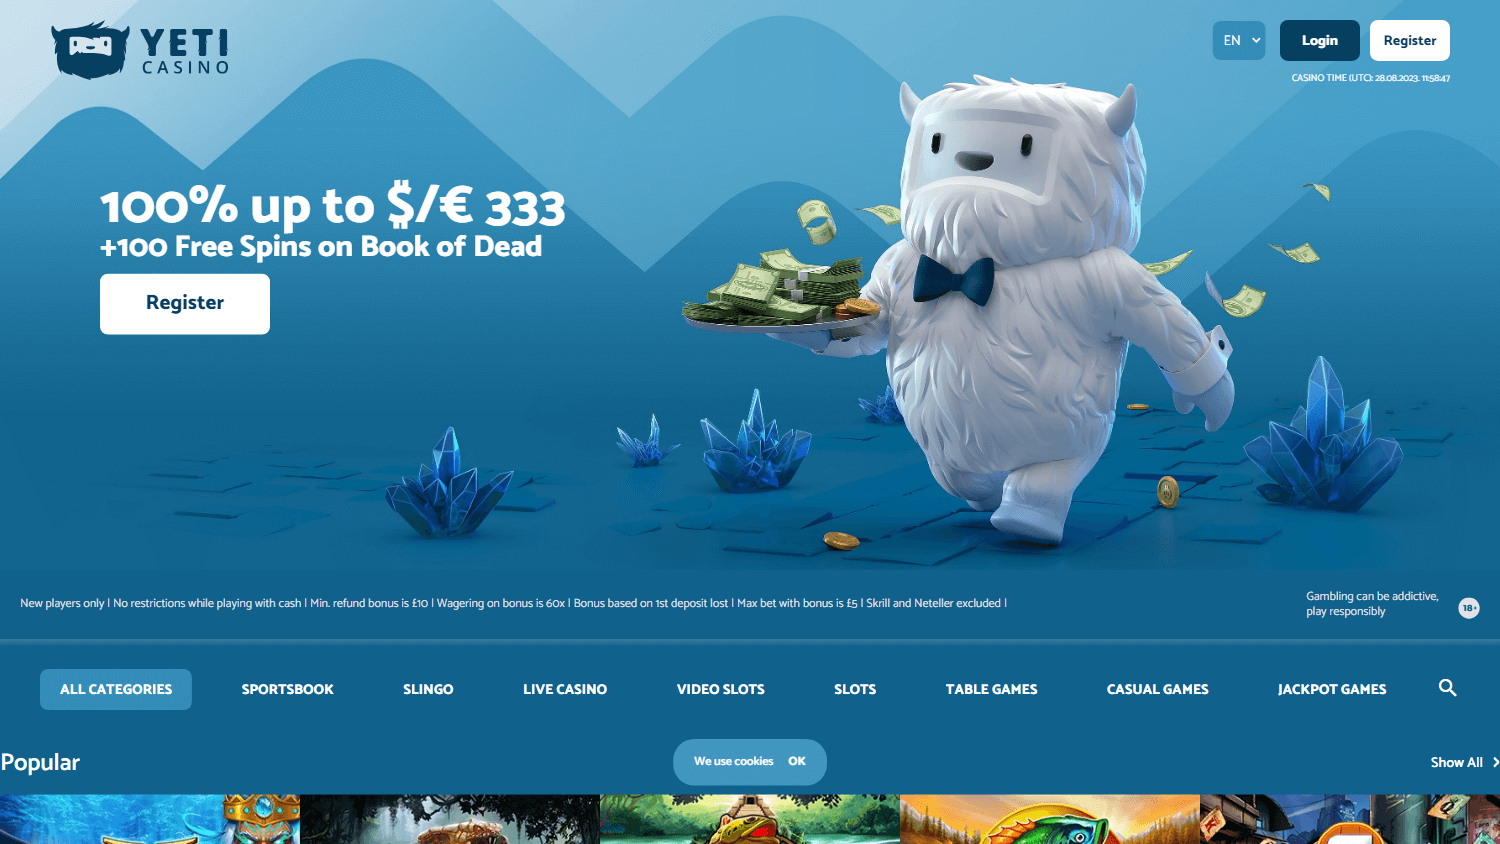 yeti_casino_homepage_desktop